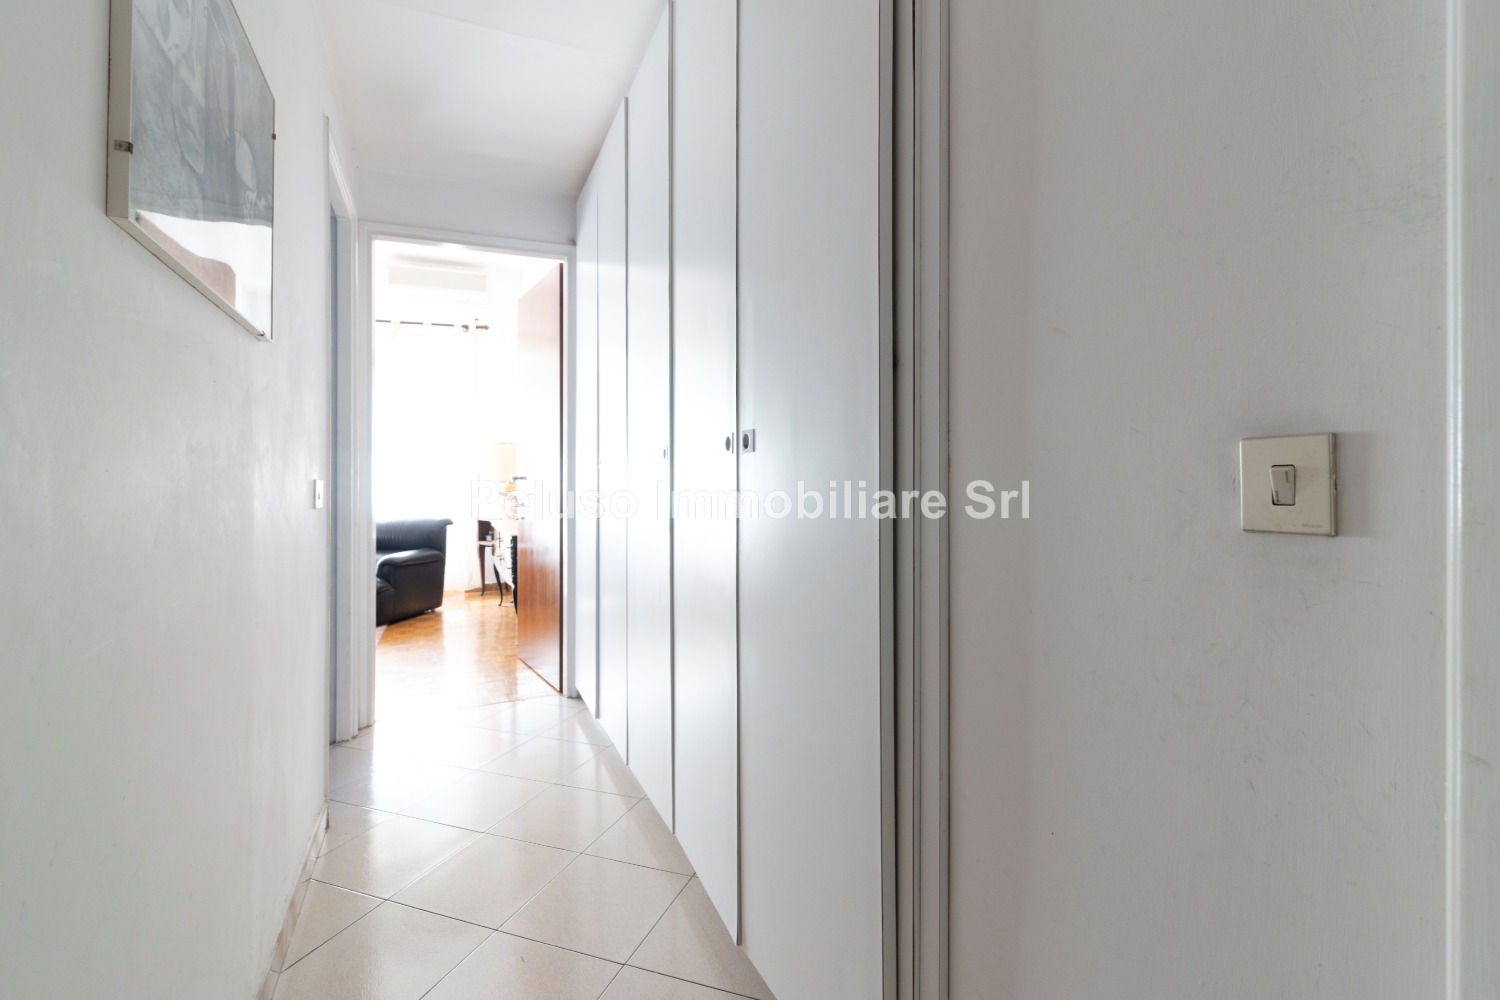 Appartamento in vendita a Roma, 3 locali, zona Zona: 19 . Colombo, Garbatella, Navigatori, Omboni, prezzo € 339.000 | CambioCasa.it